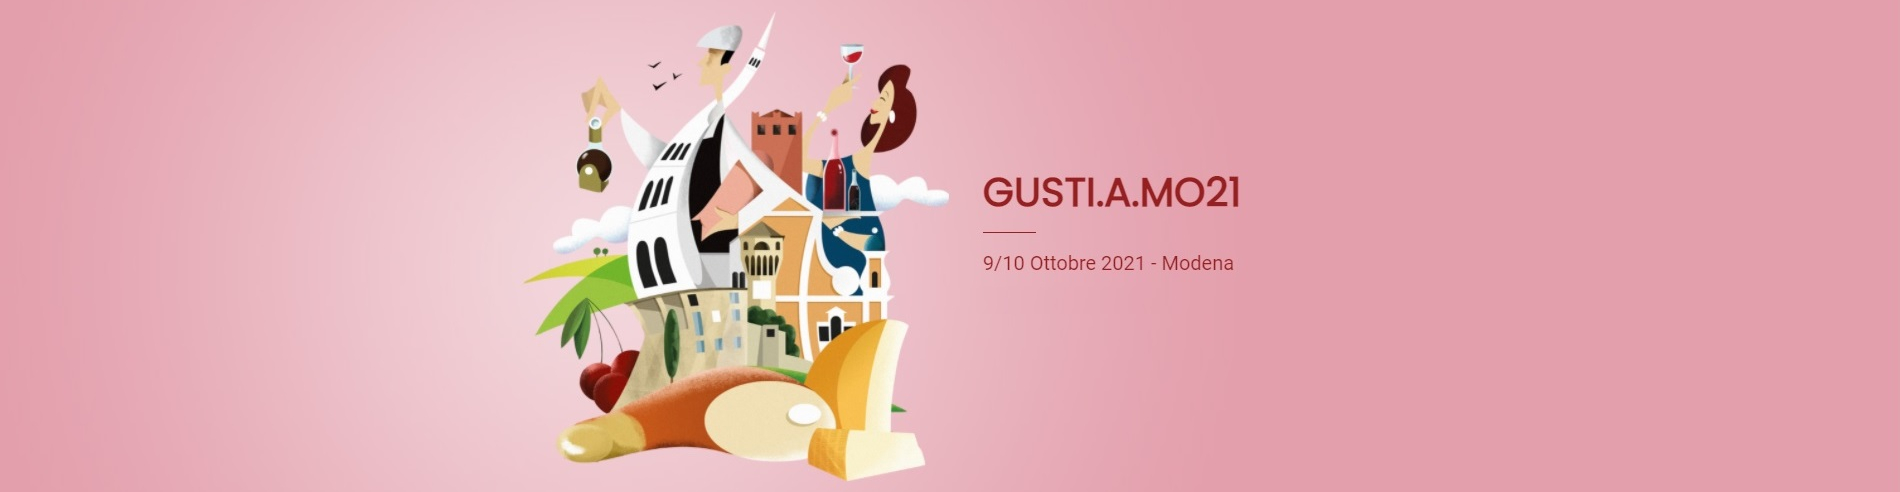 Gusti.a.Mo21, un weekend con tutto il bello e il buono di Modena